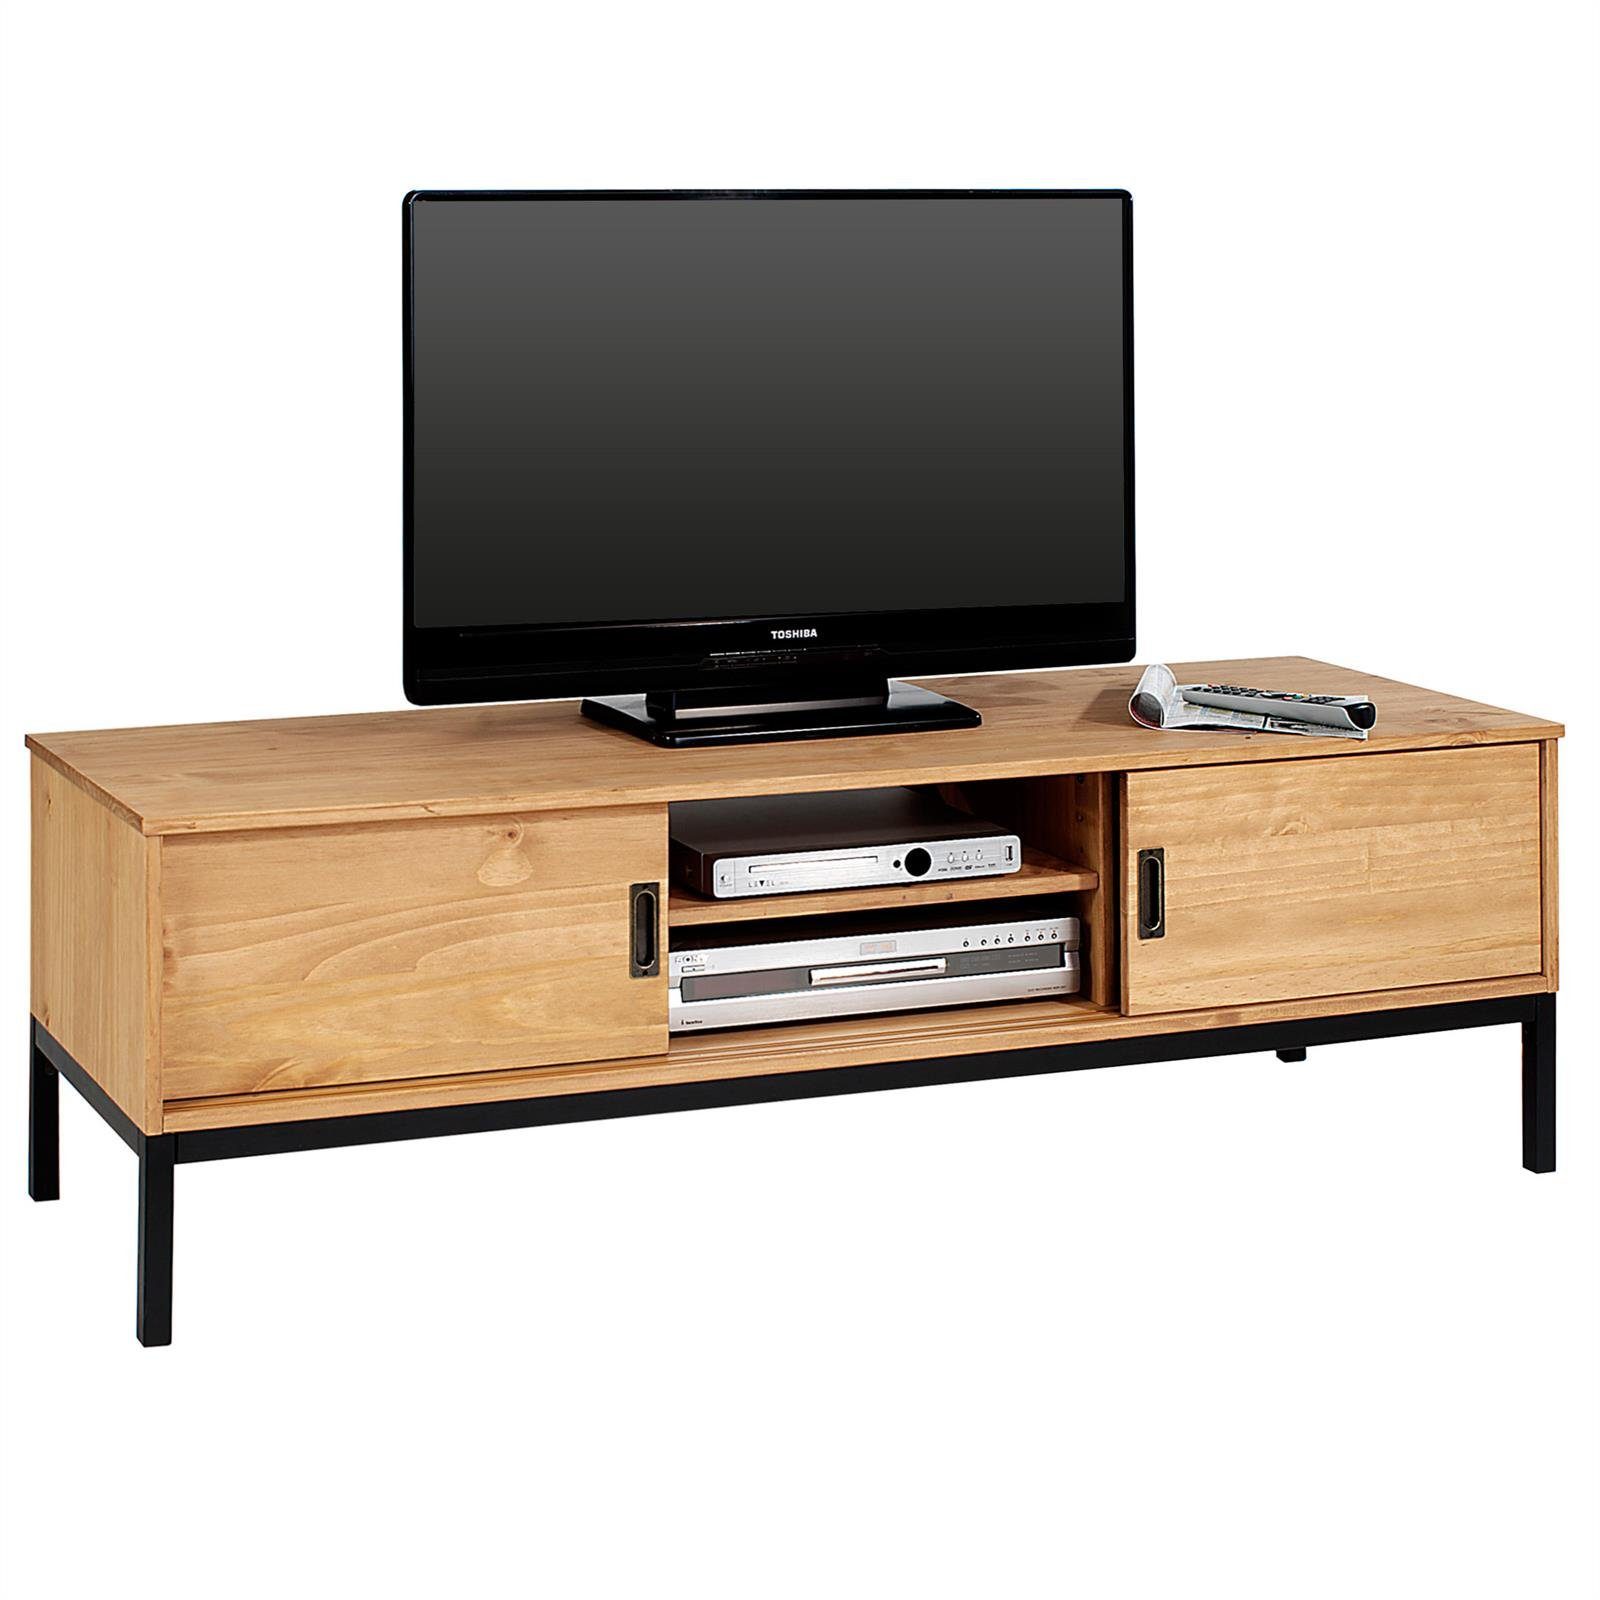 IDIMEX Lowboard SELMA, Lowboard TV Möbel Tisch Schrank Fernsehtisch Industrial Designl gebeiz